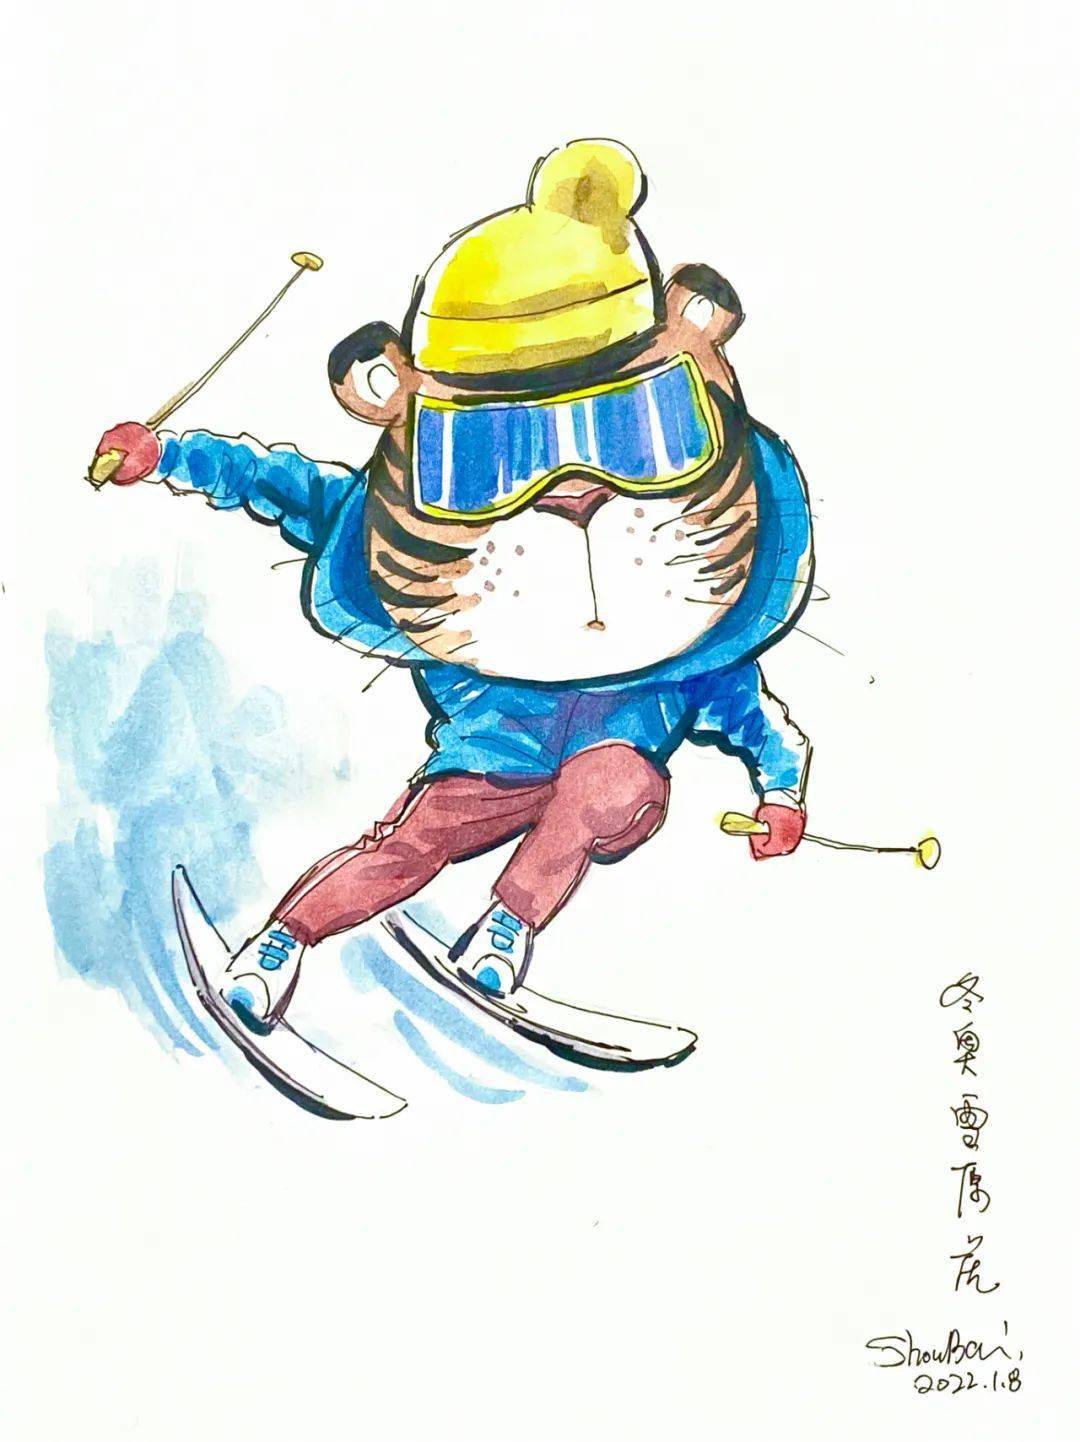 双板滑雪虎这副画作描绘的是一个头戴护目镜,身披运动服的老虎形象.